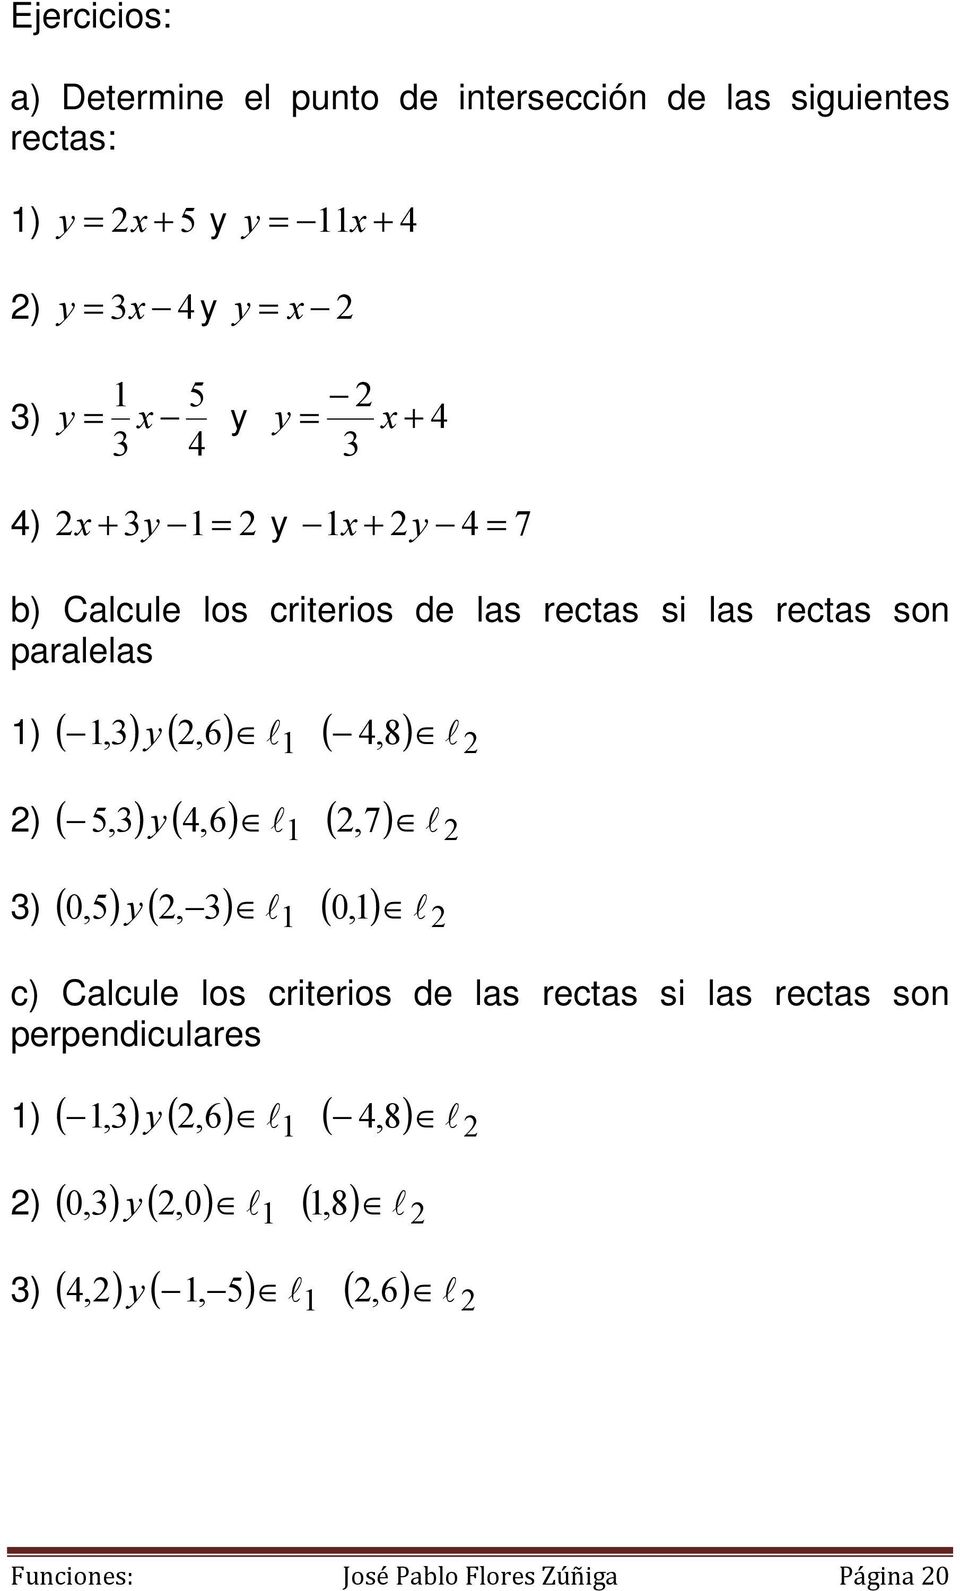 ) ( ) ( ) ( ) 0,5, 3 l l 1 0, 1 3) ( ) ( ) ( ) c) Calcule los criterios de las rectas si las rectas son perpendiculares,3,6 l l